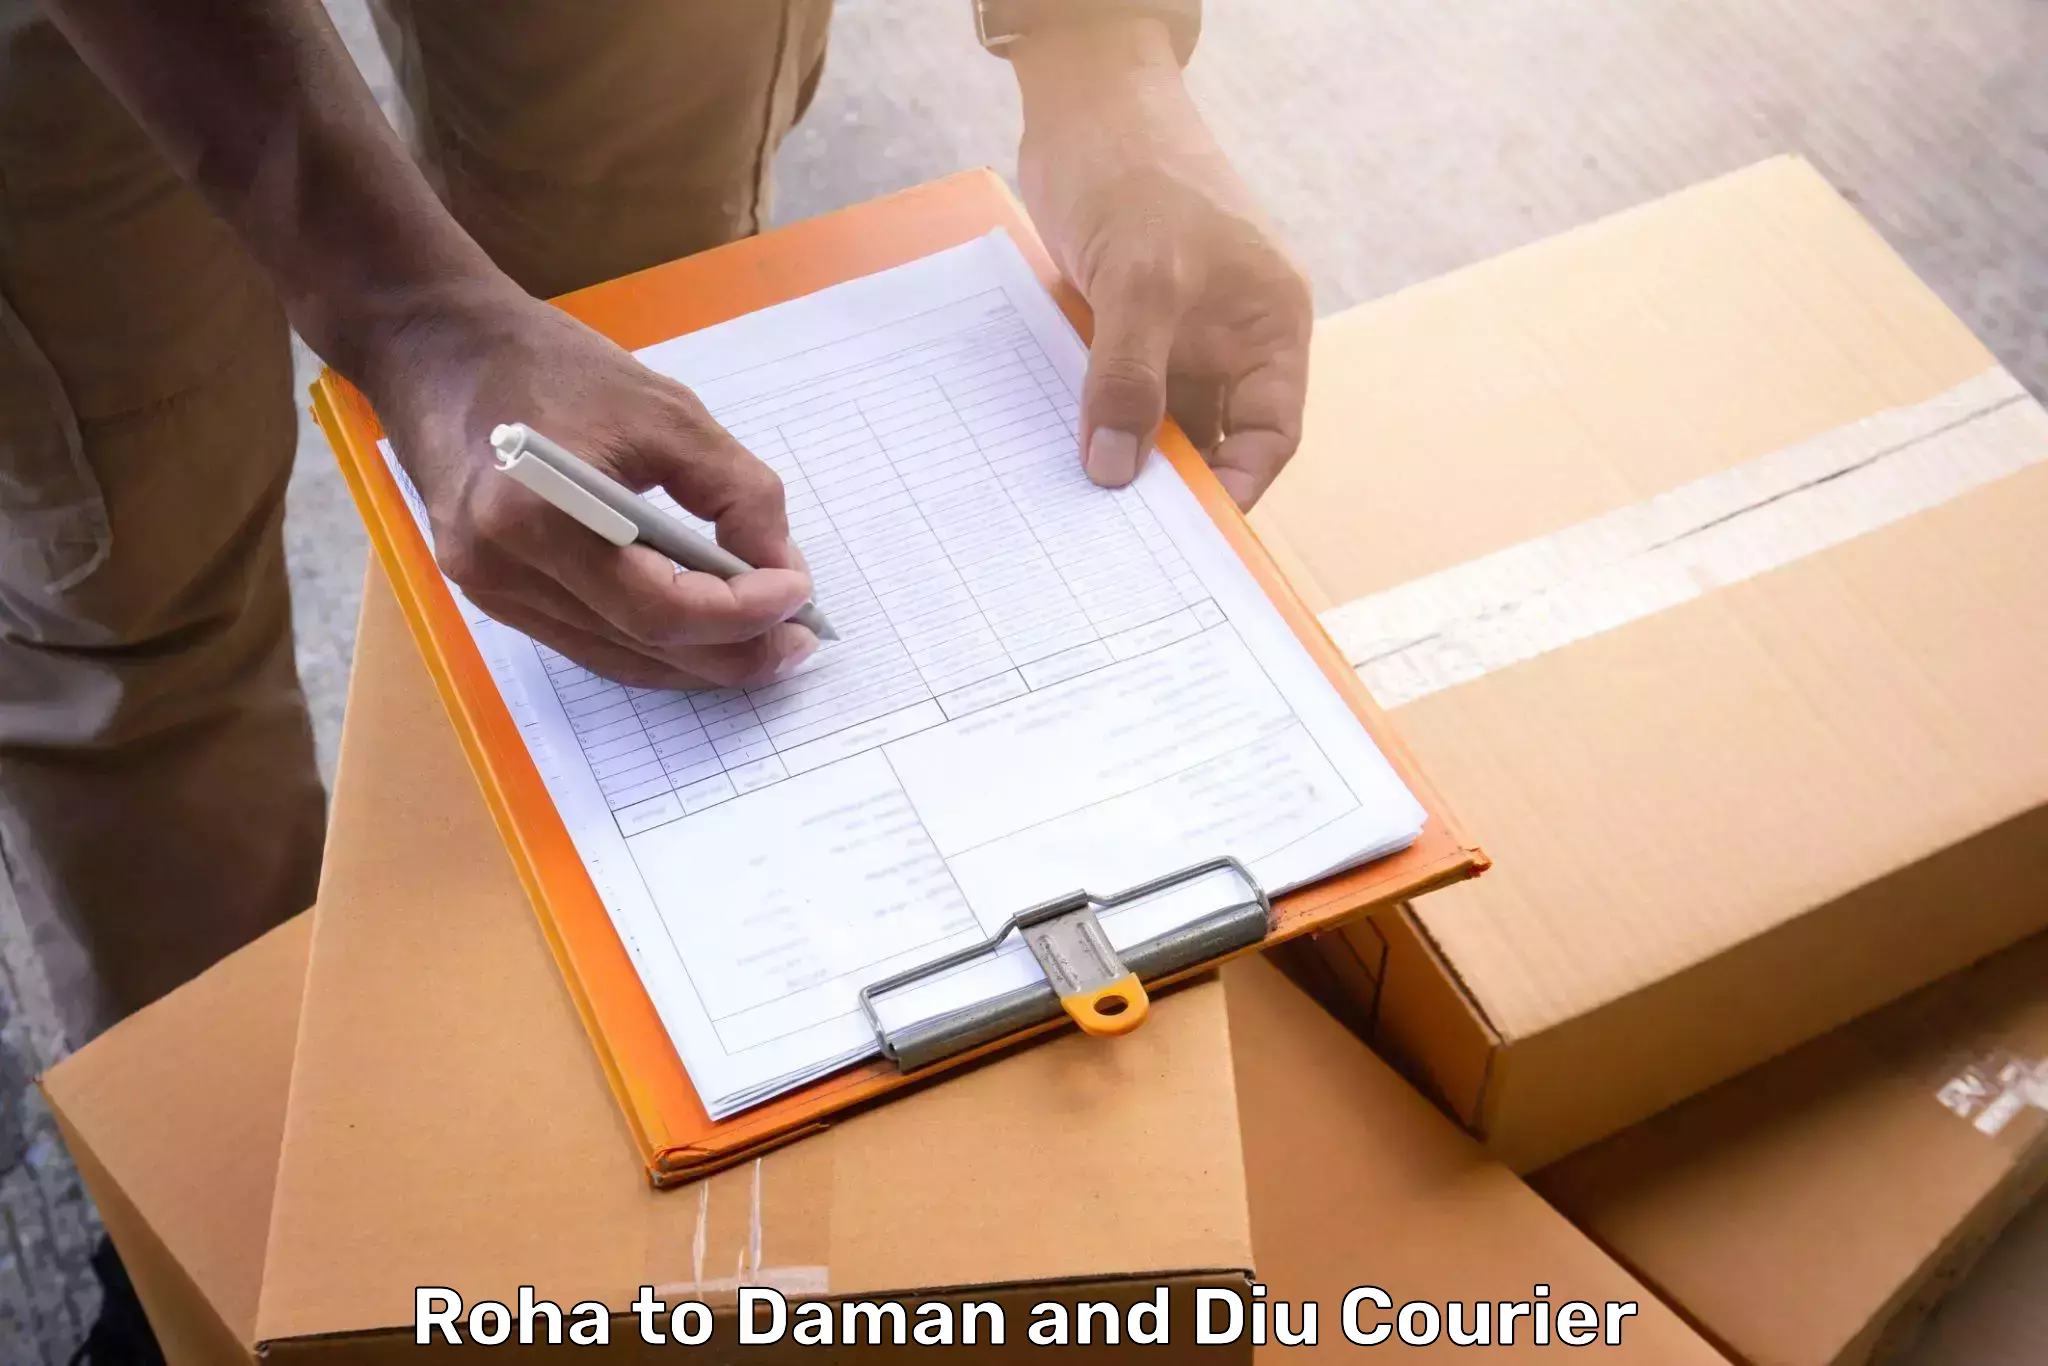 Hassle-free luggage shipping Roha to Daman and Diu